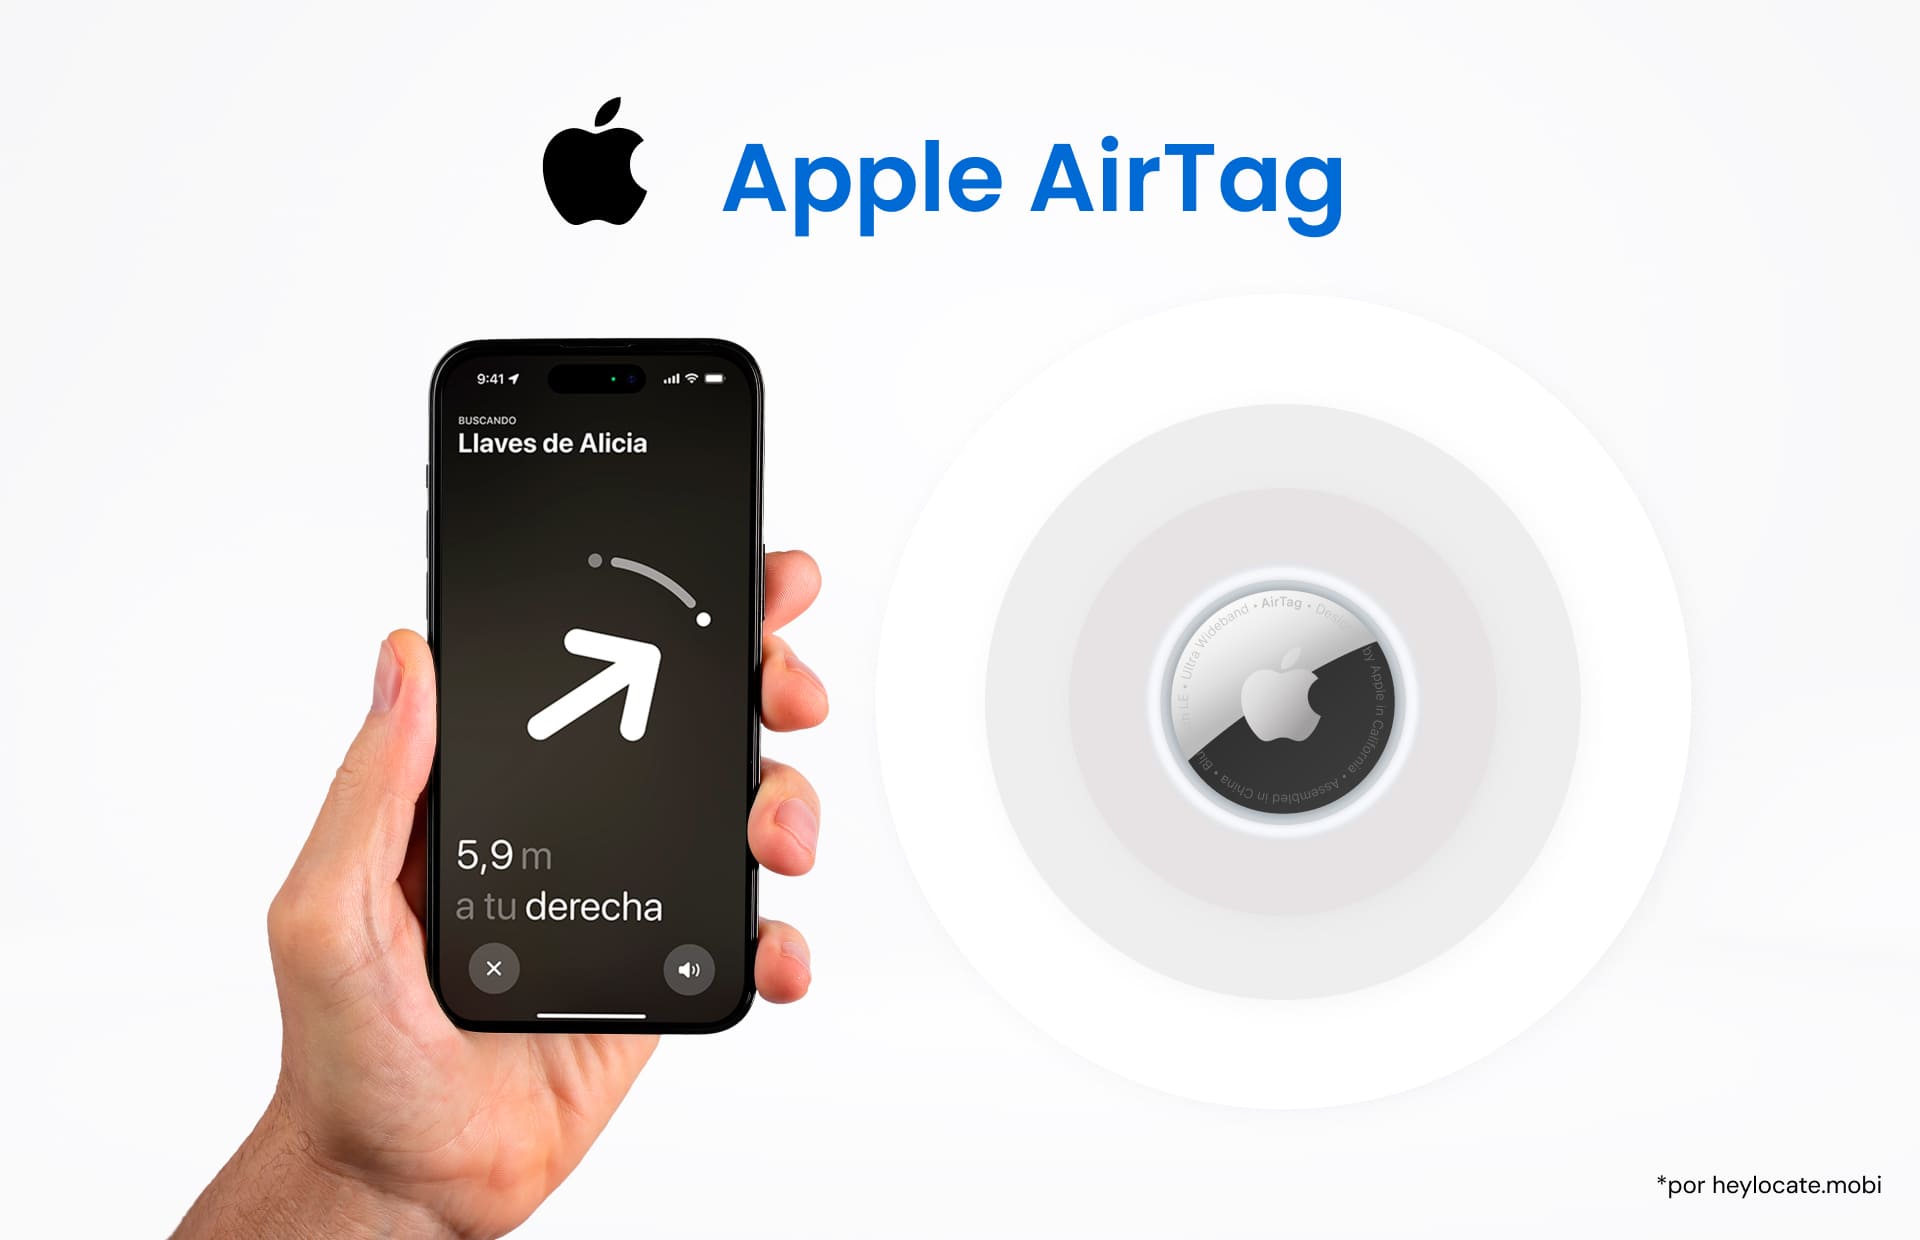 Imagen que muestra una mano sosteniendo un iPhone con la interfaz de seguimiento Apple AirTag en la pantalla, y un Apple AirTag que ilustra la función de seguimiento del dispositivo